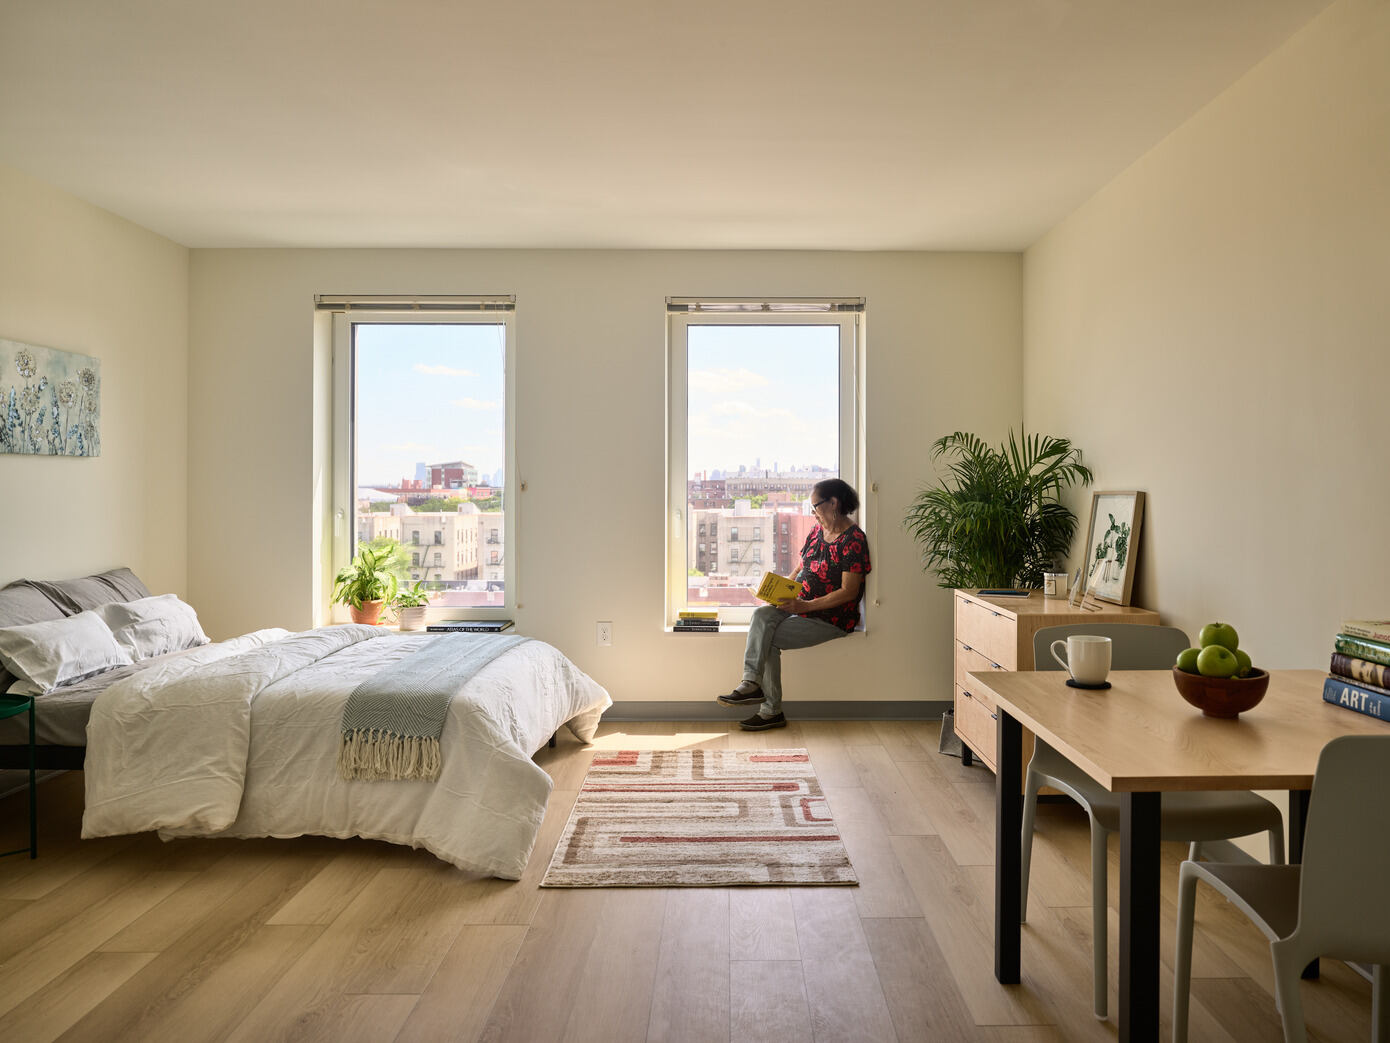 Betances Residence: Bronx’s New Standard for Senior Living